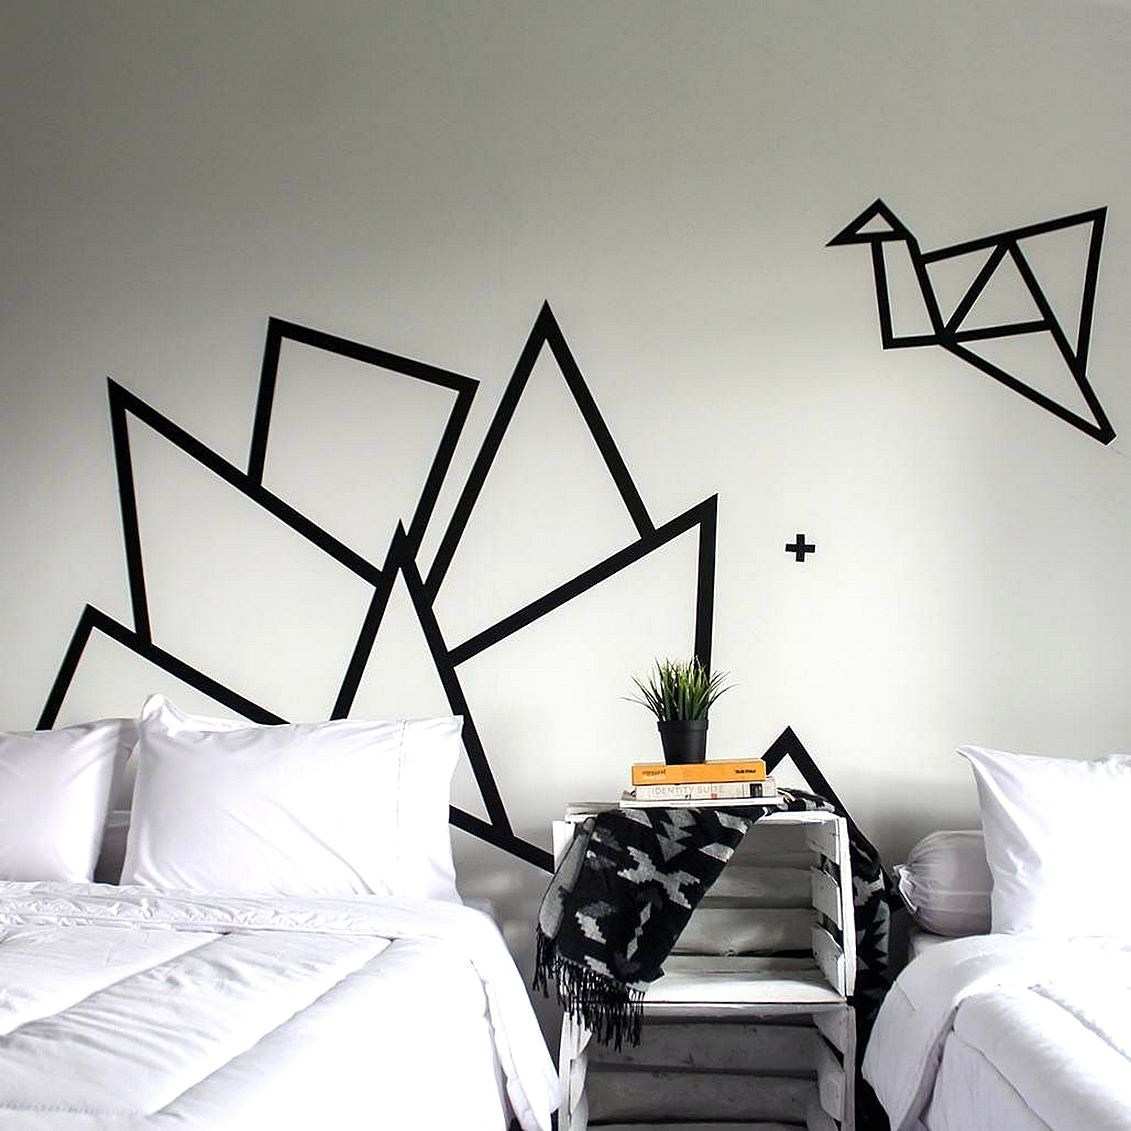 壁紙dinding kamar hitam putih,壁,黒と白,ルーム,家具,モノクロ写真